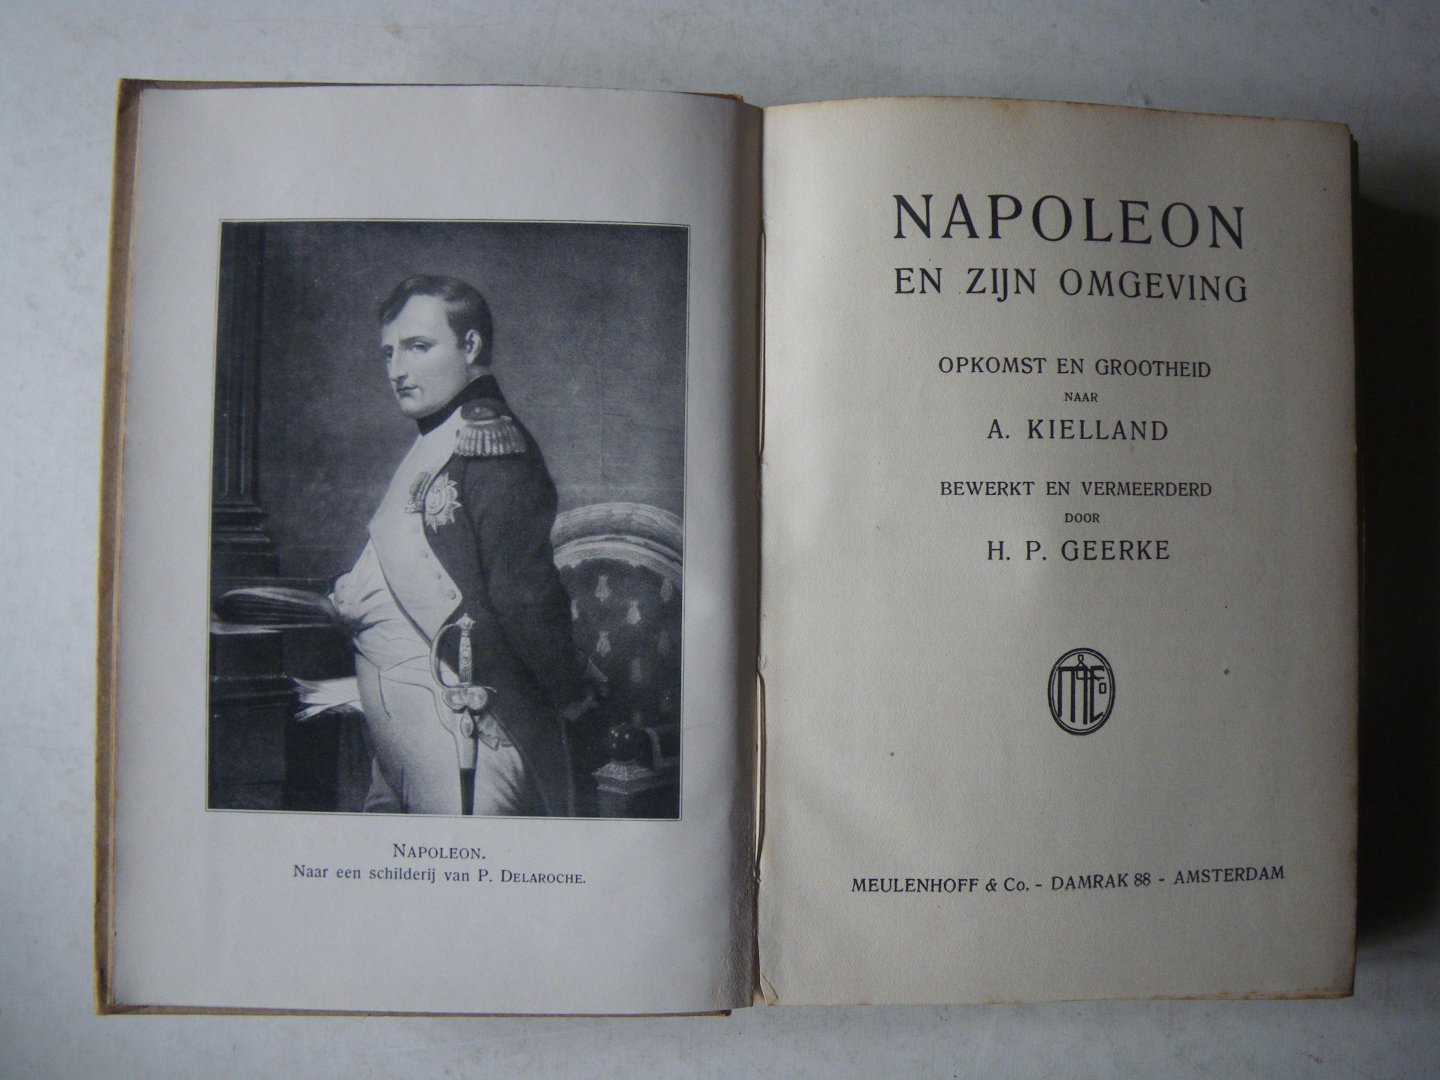 Kielland, A., H.P. Geerke - Napoleon en zijn omgeving opkomst en grootheid